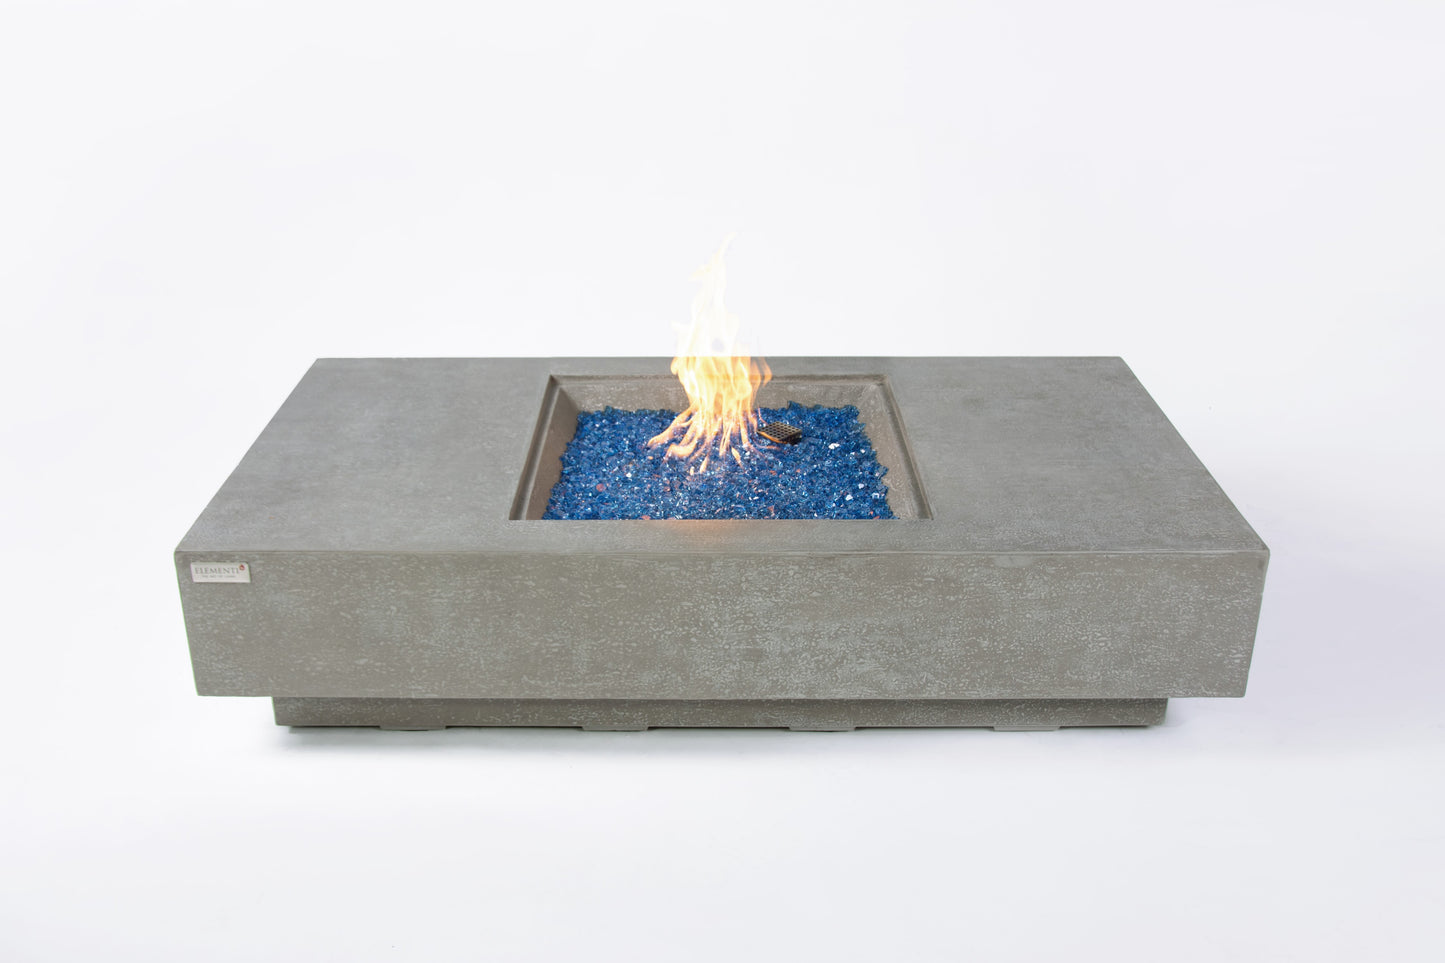 Monte Carlo Natural Limestone Concrete Rectangle Fire Pit Table